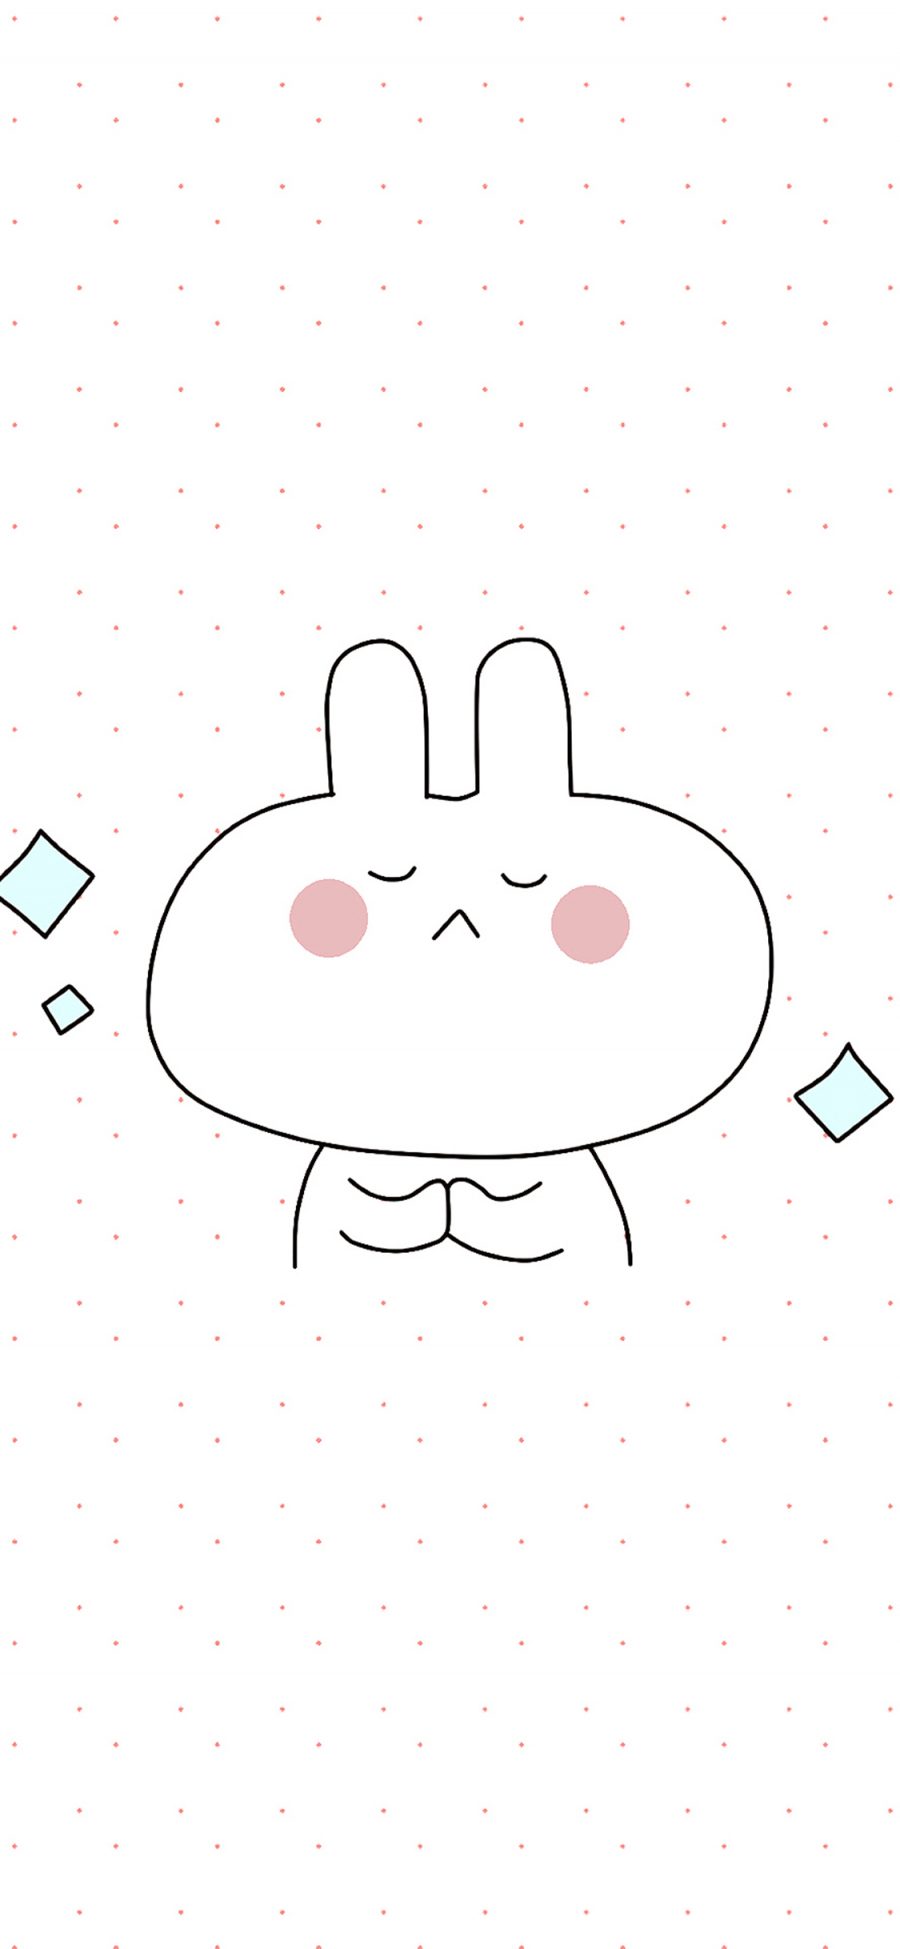 [2436×1125]情侣壁纸 兔子 简约 可爱 手绘 苹果手机动漫壁纸图片